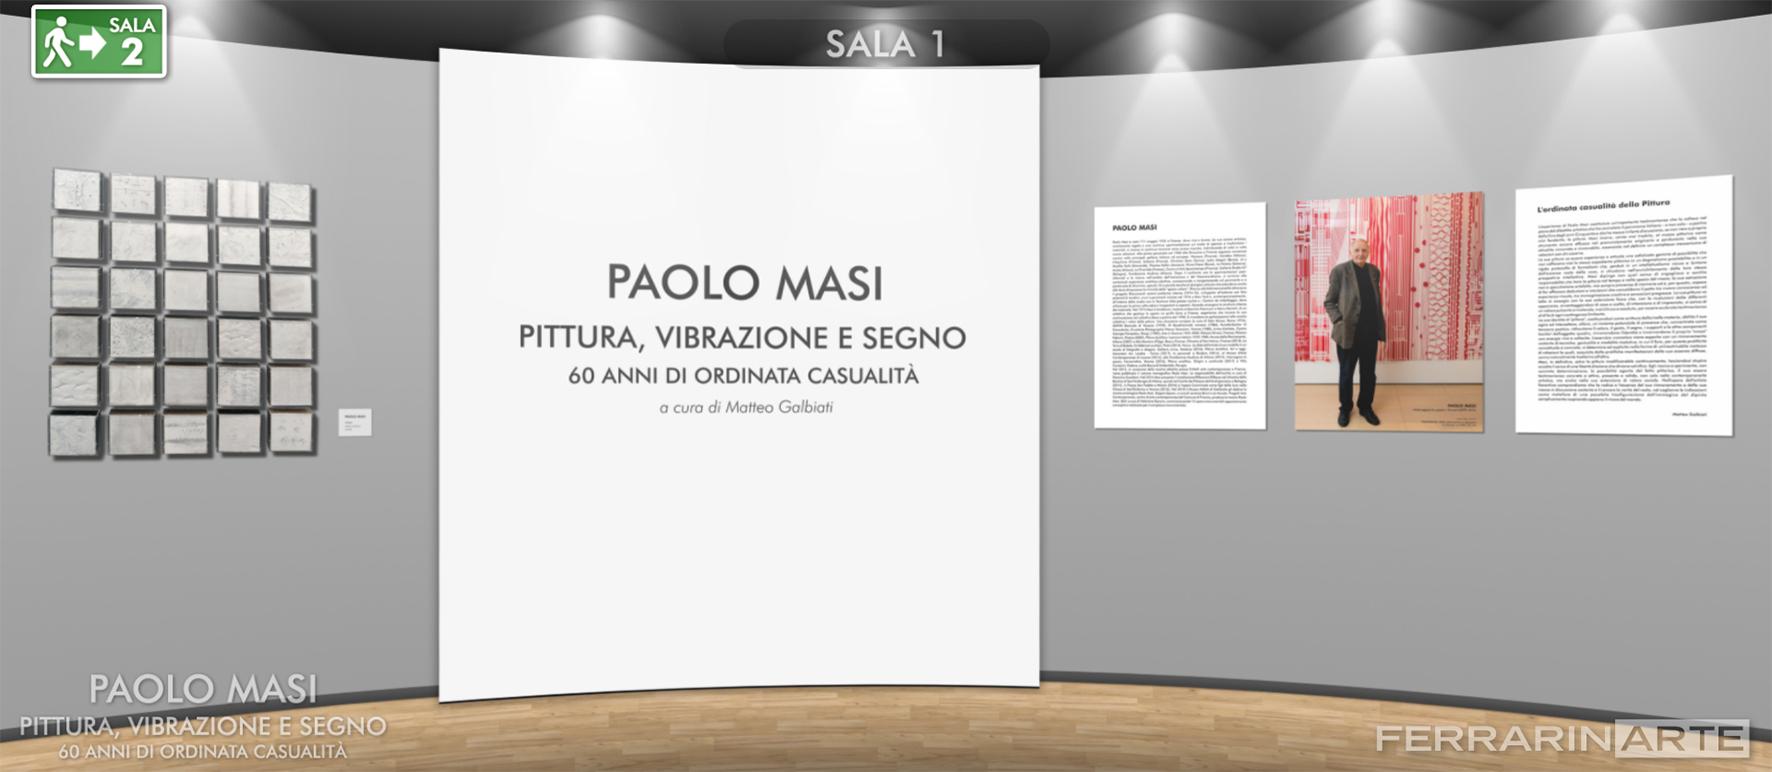 Paolo Masi. Pittura, vibrazione e segno. 60 anni di ordinata casualità. Allestimento inedito e mostra virtuale